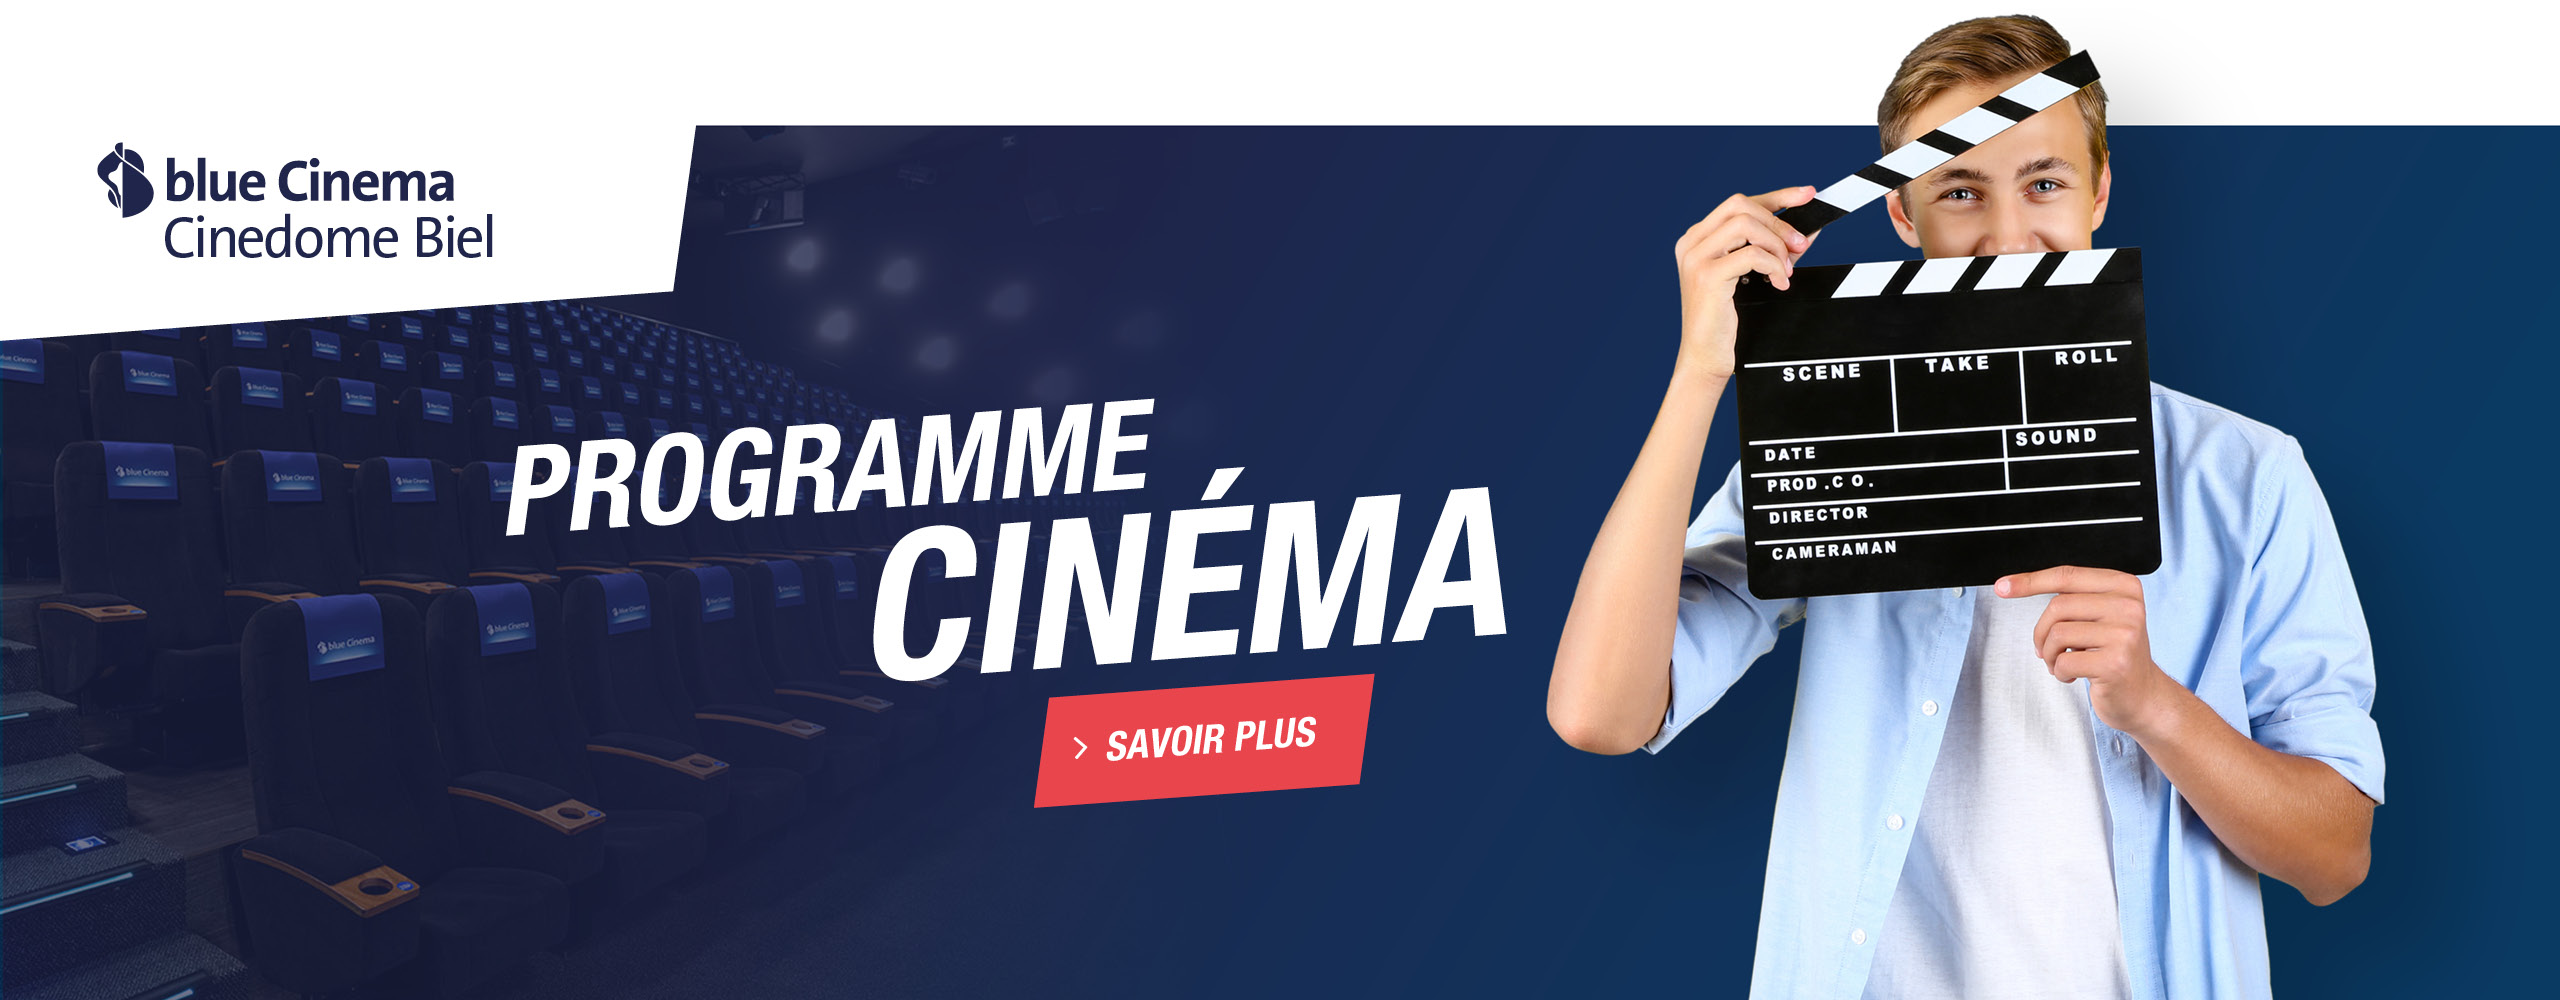 blue-cinema-cinedome-biel-teaser-shopping-les-stades-fr-slide2